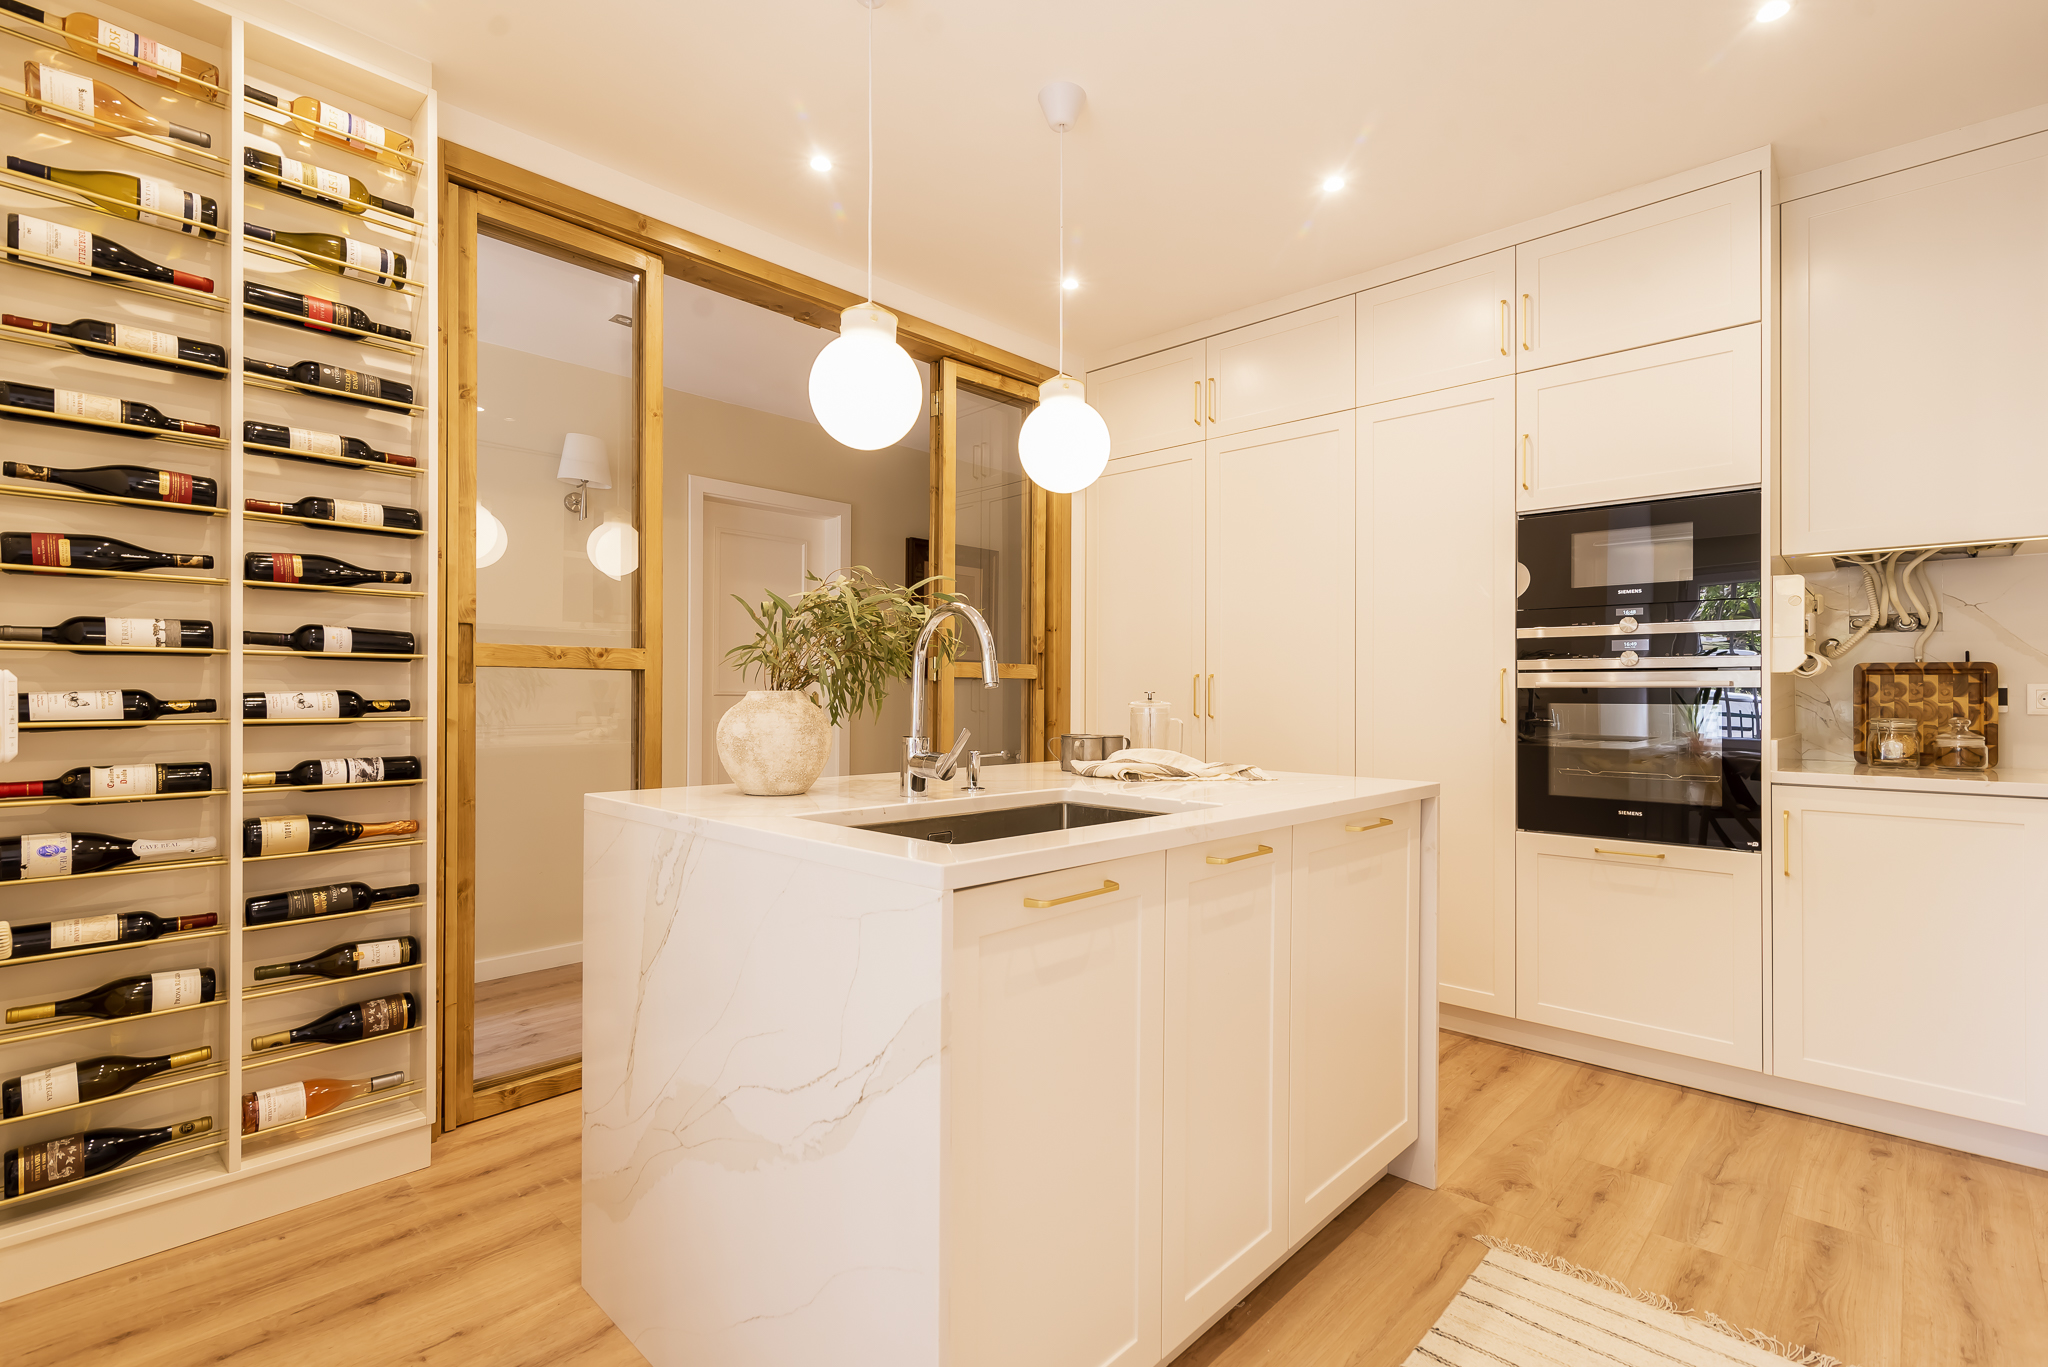 Design de interiores - Cozinha moderna com armários tipo shaker e ilha, acabamentos brancos e madeira